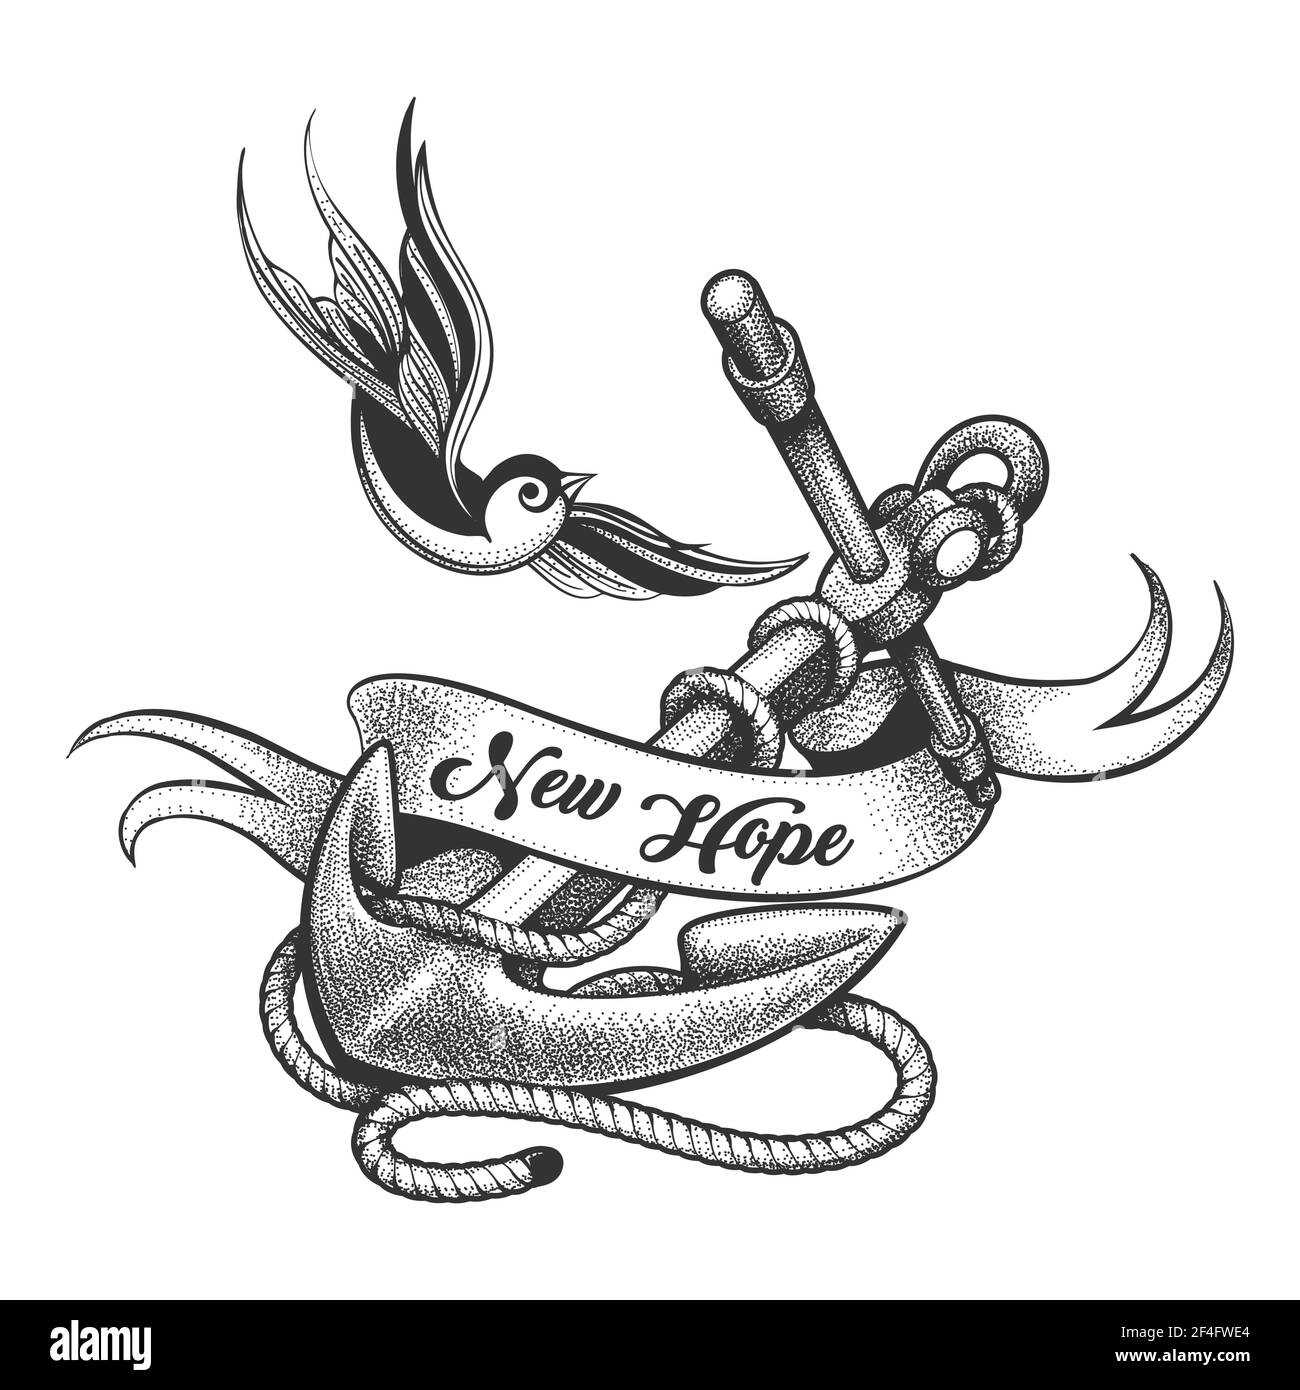 Tatouage d'hirondelle volante et d'ancrage avec lettrage de nouvel espoir sur le ruban. Illustration vectorielle. Illustration de Vecteur